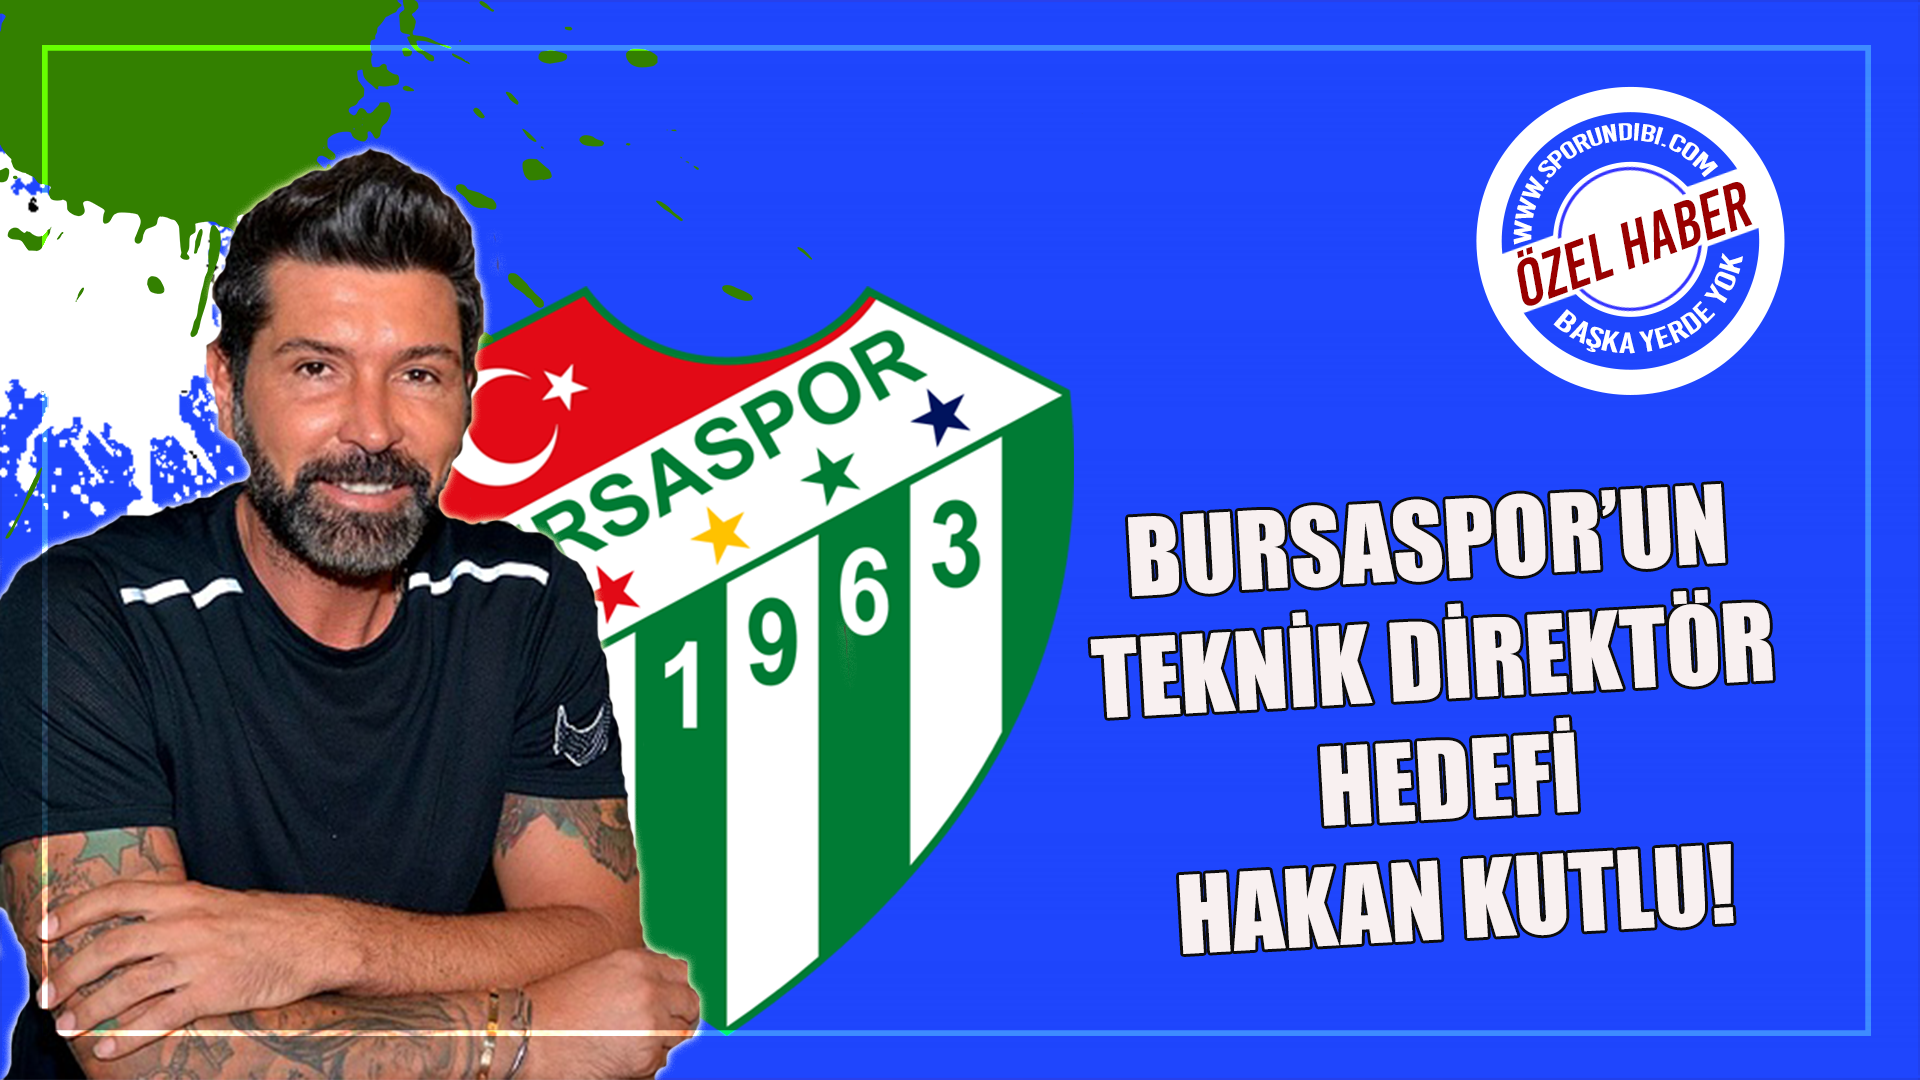 Bursaspor'un teknik direktör hedefi Hakan Kutlu!